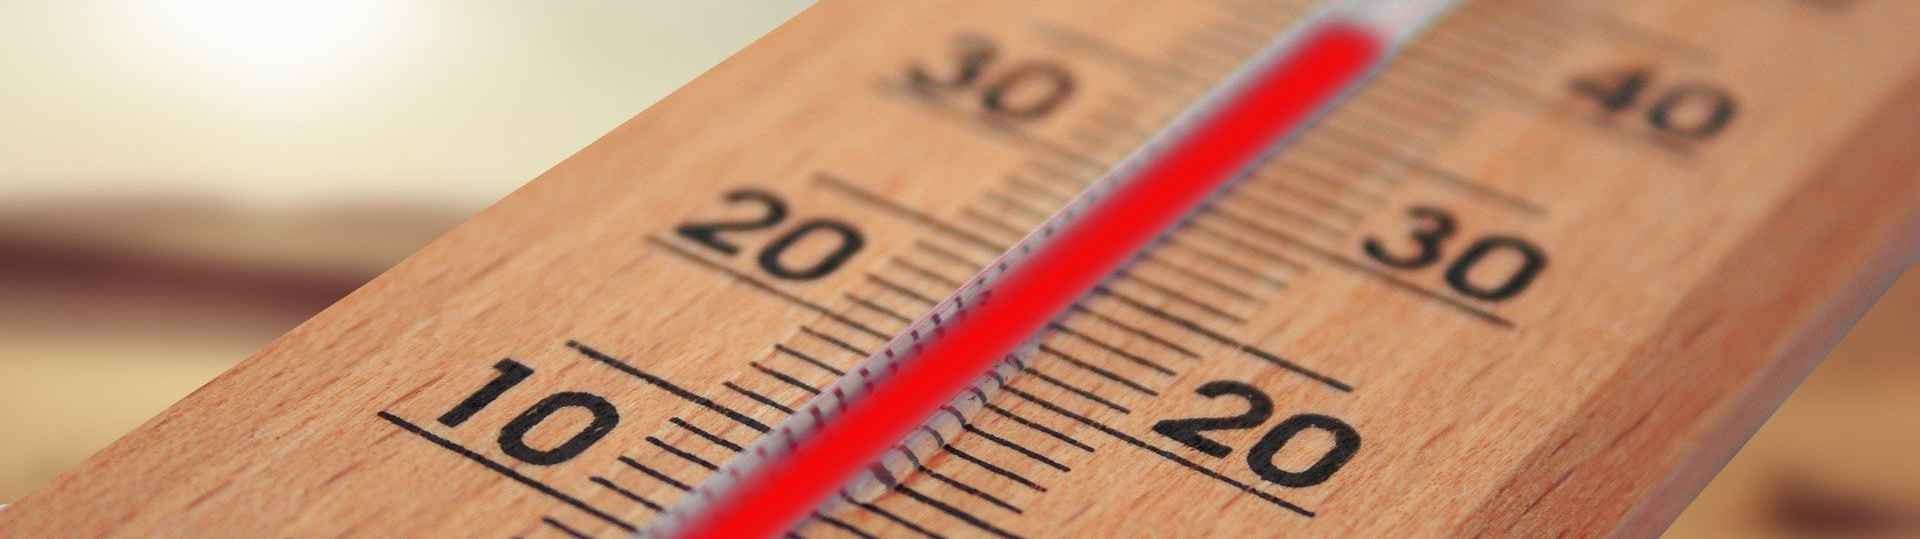 El calor intenso pone en alerta a nueve provincias por riesgo de mortalidad